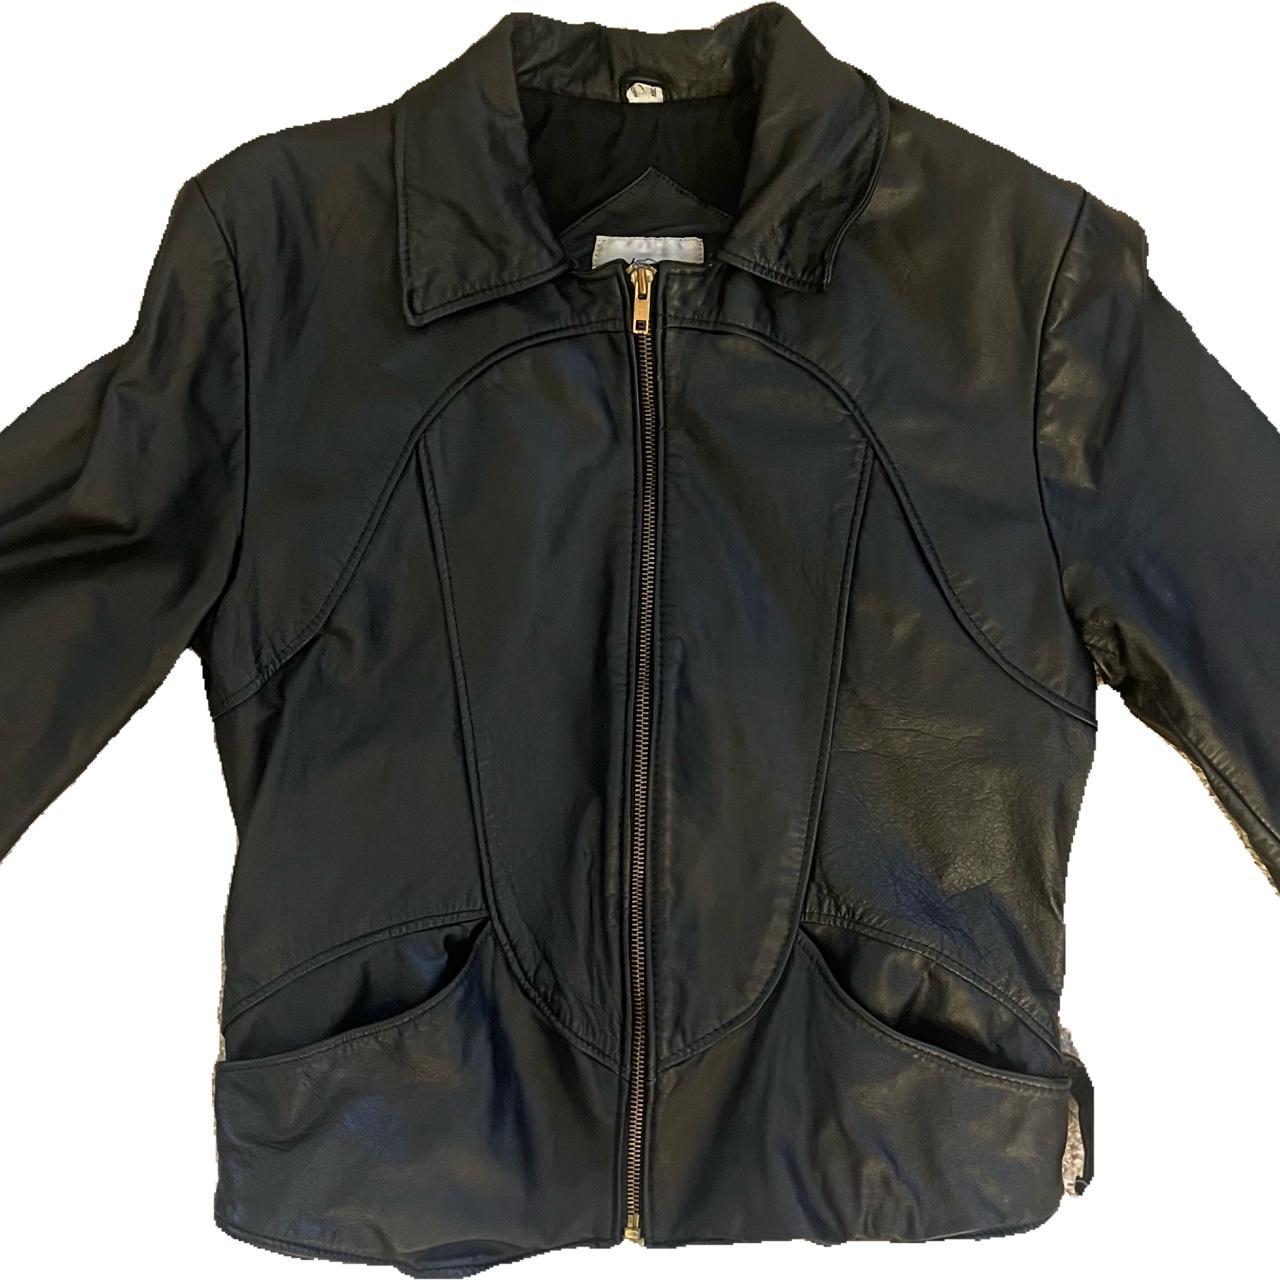 “NOT RICK OWENS” Vintage Black Leather Pilot Jacket... - Depop